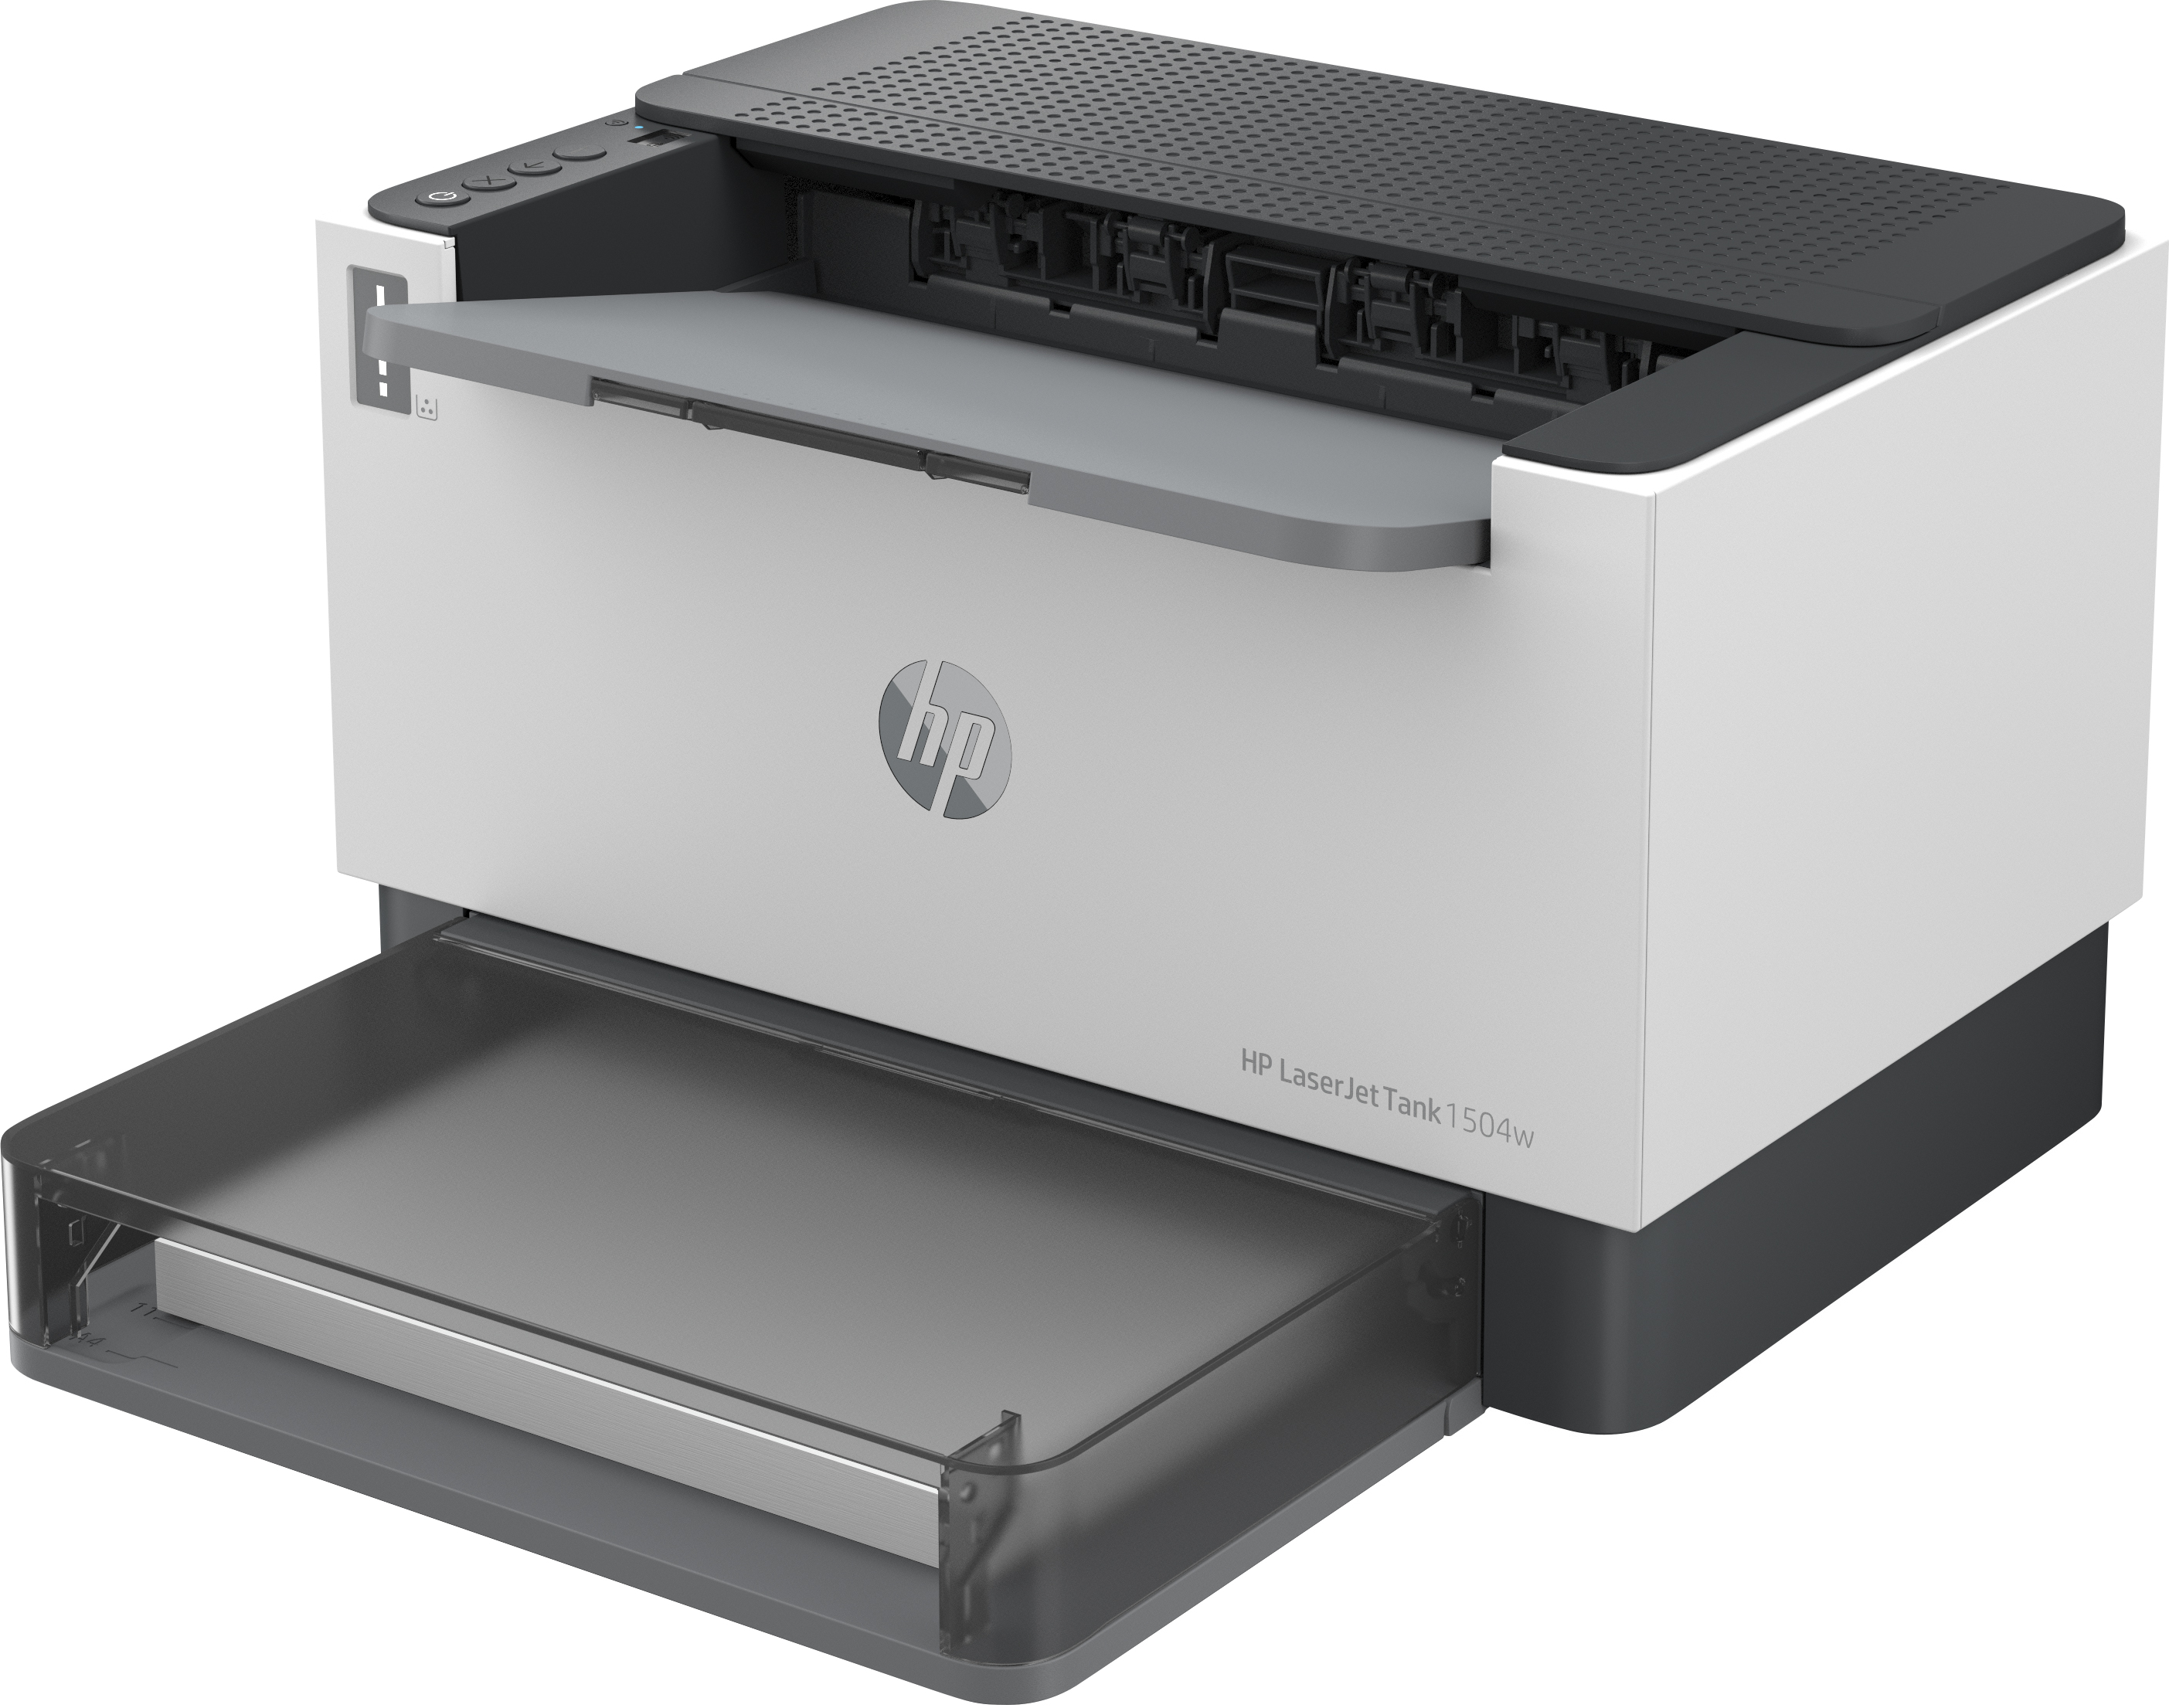 HP LaserJet Imprimante Tank 1504w, Noir et blanc, Imprimante pour Entreprises, Imprimer, Format compact. Éco-énergétique. Wi-Fi double fréquence